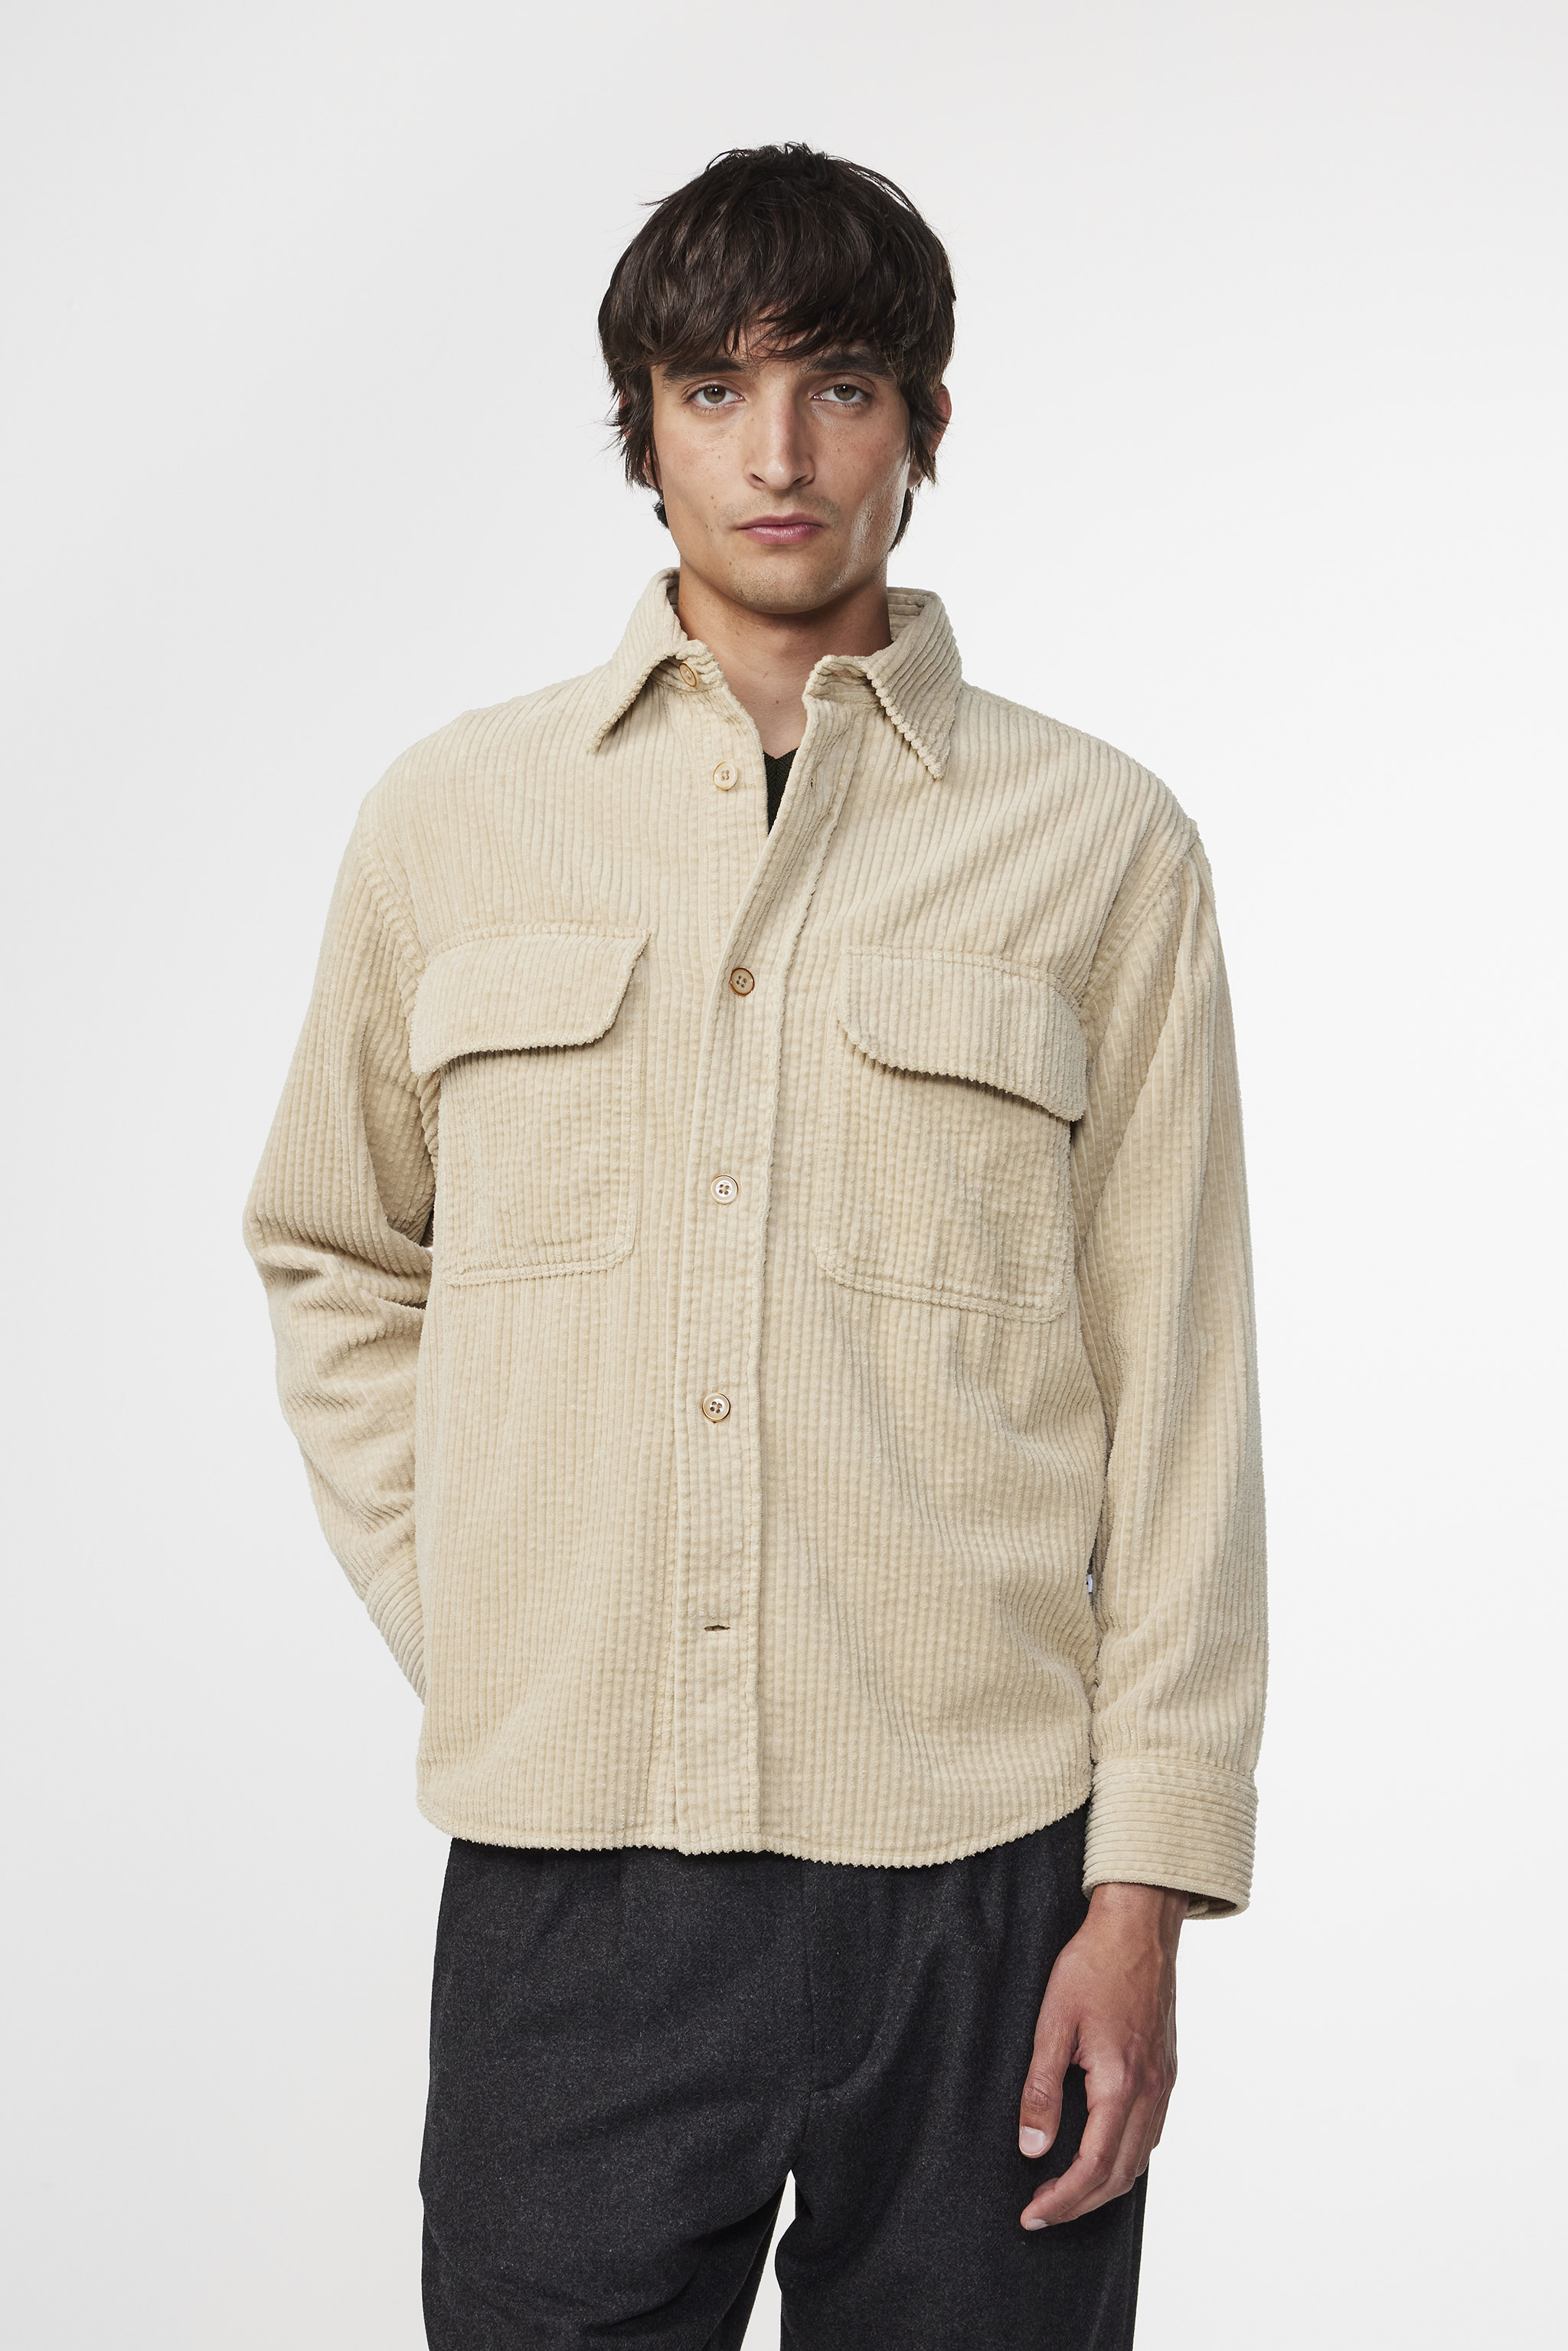 Folmer 1725 men's overshirt - White - Buy online at NN.07®